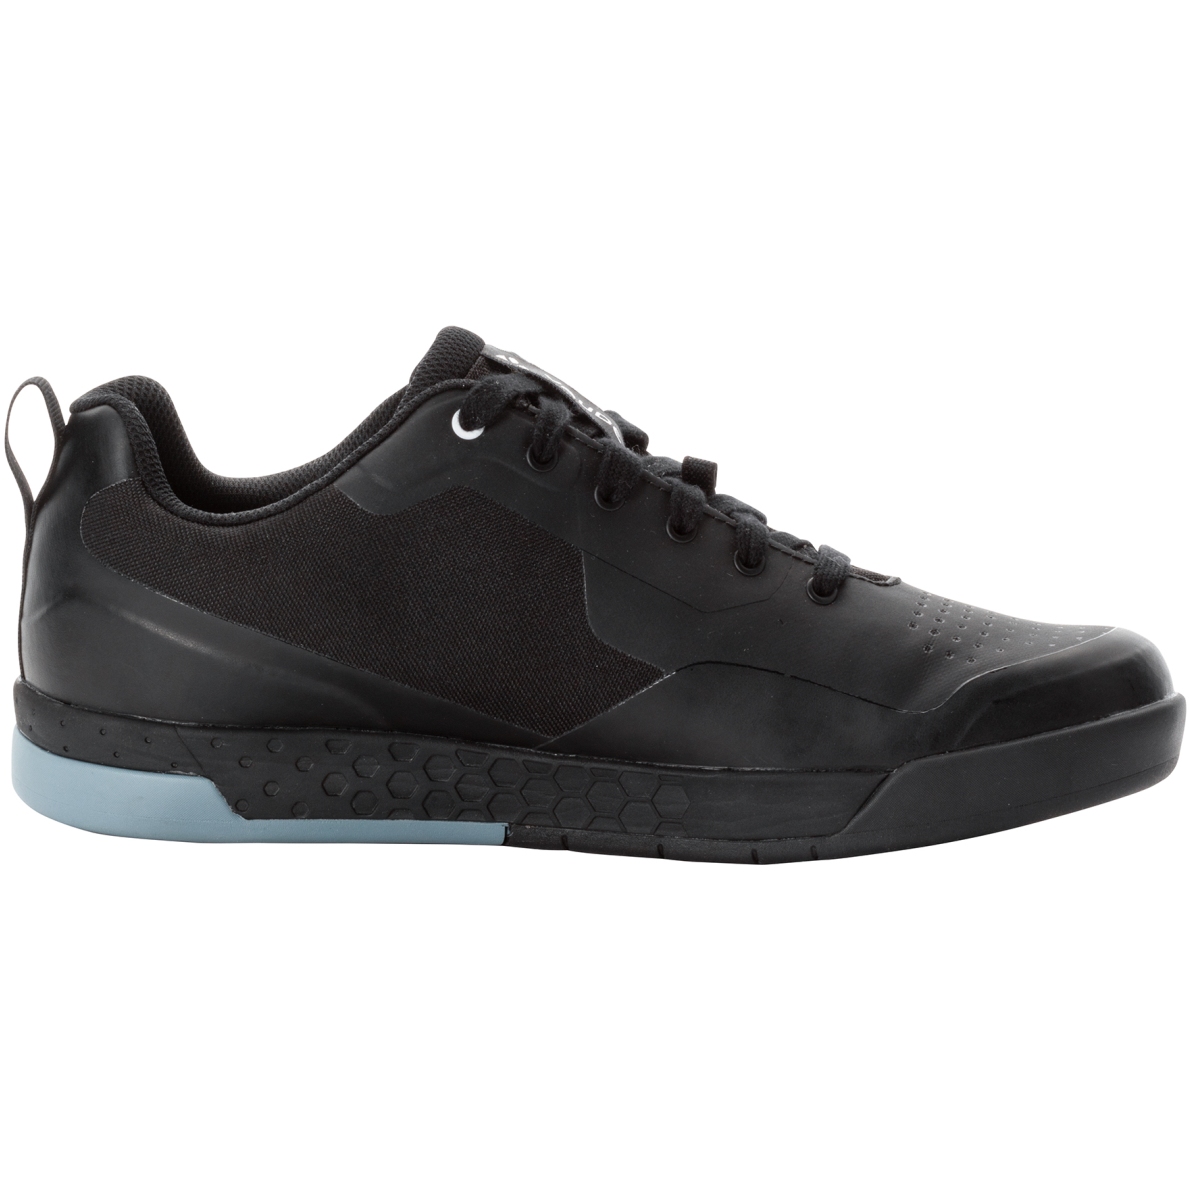 Produktbild von Vaude Moab STX Flachpedale Schuhe Herren - schwarz/weiß